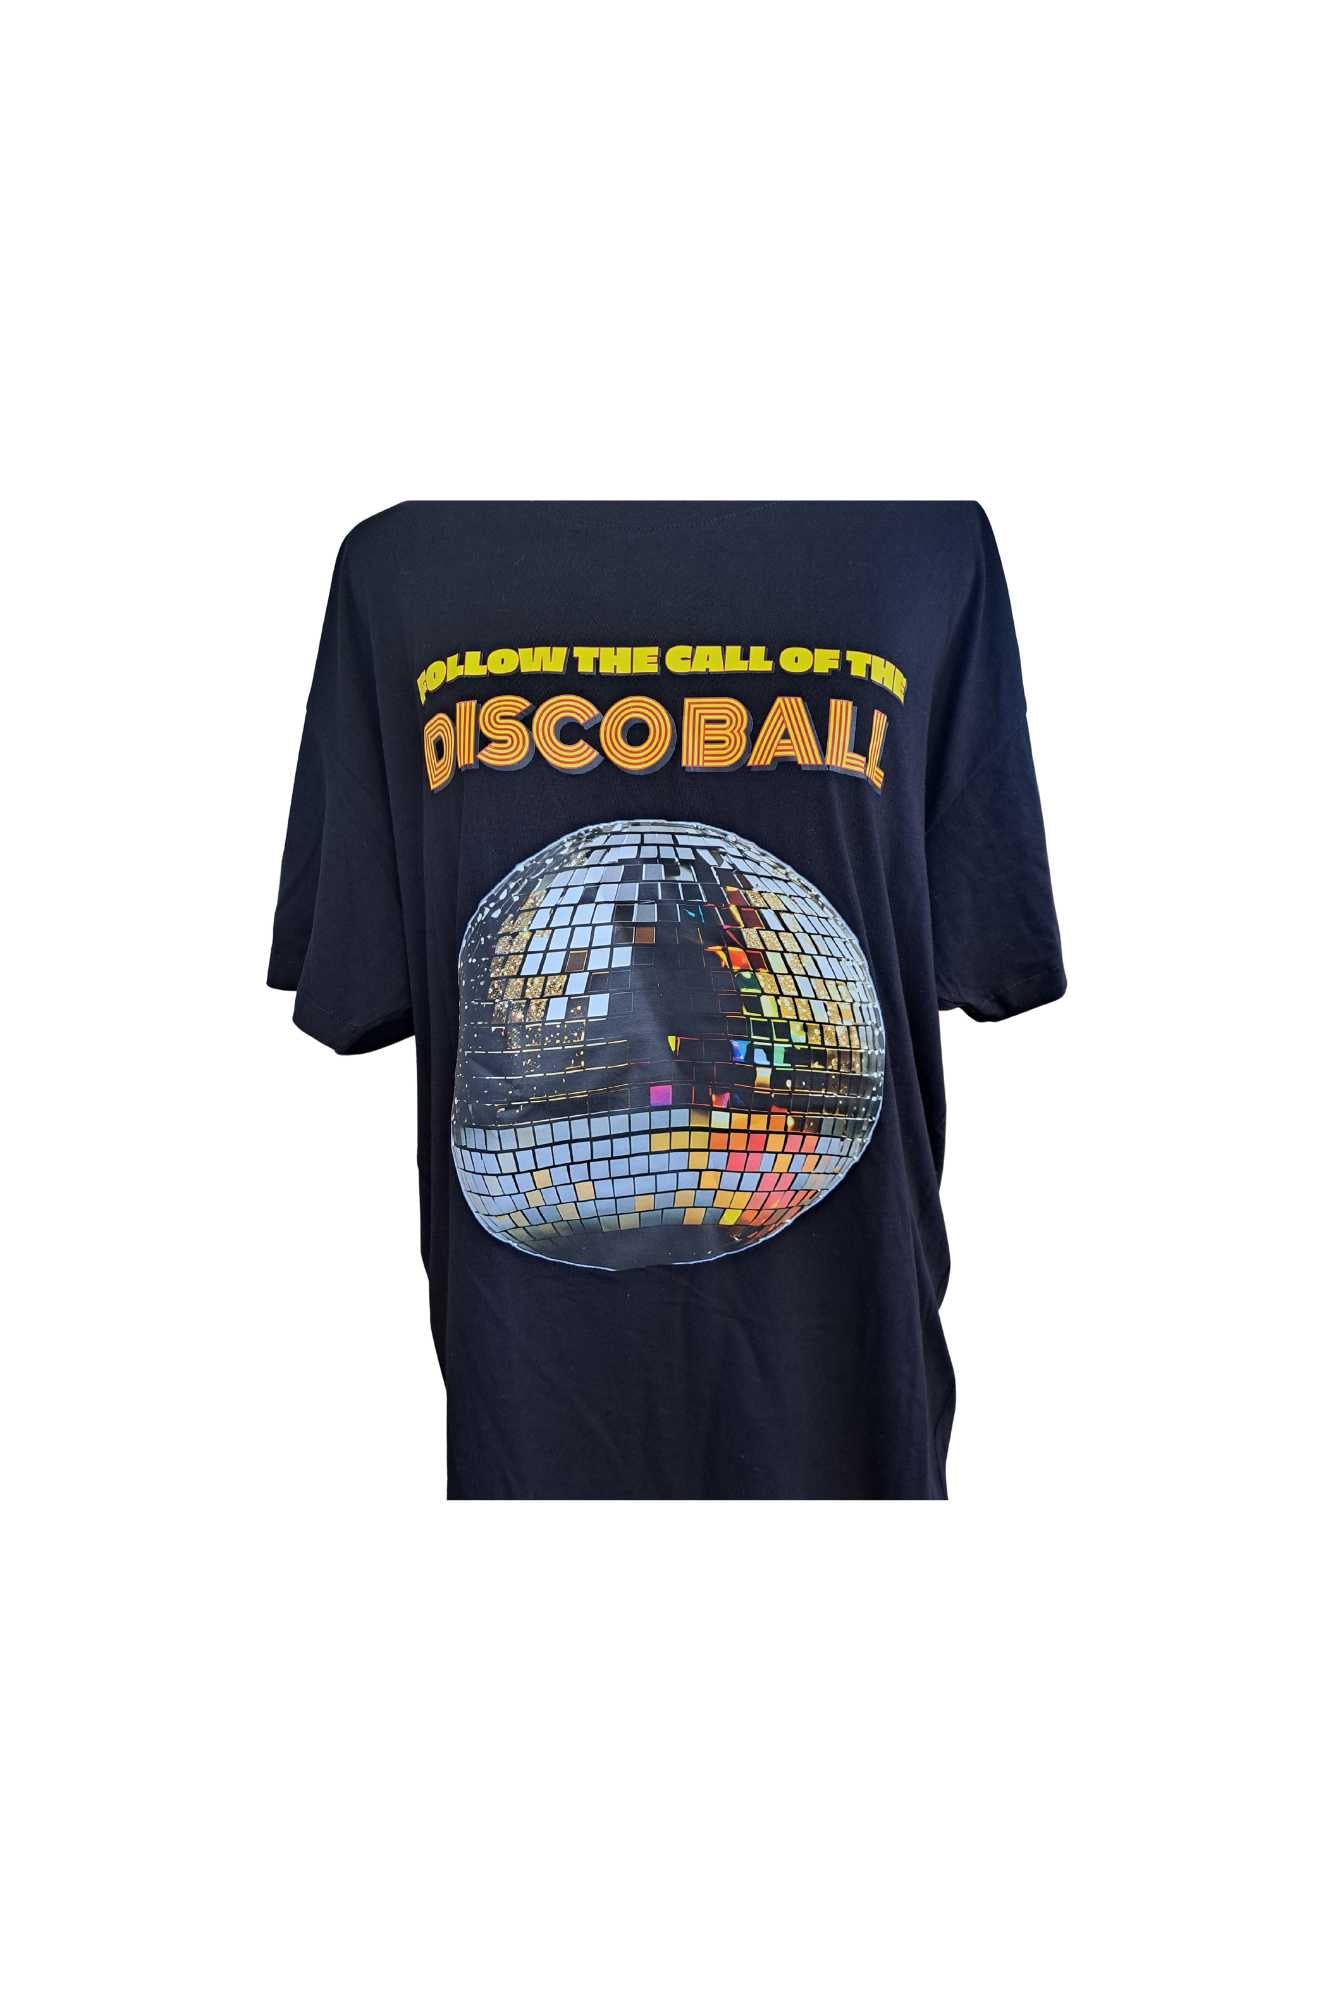 Follow the Call of the Disco Ball